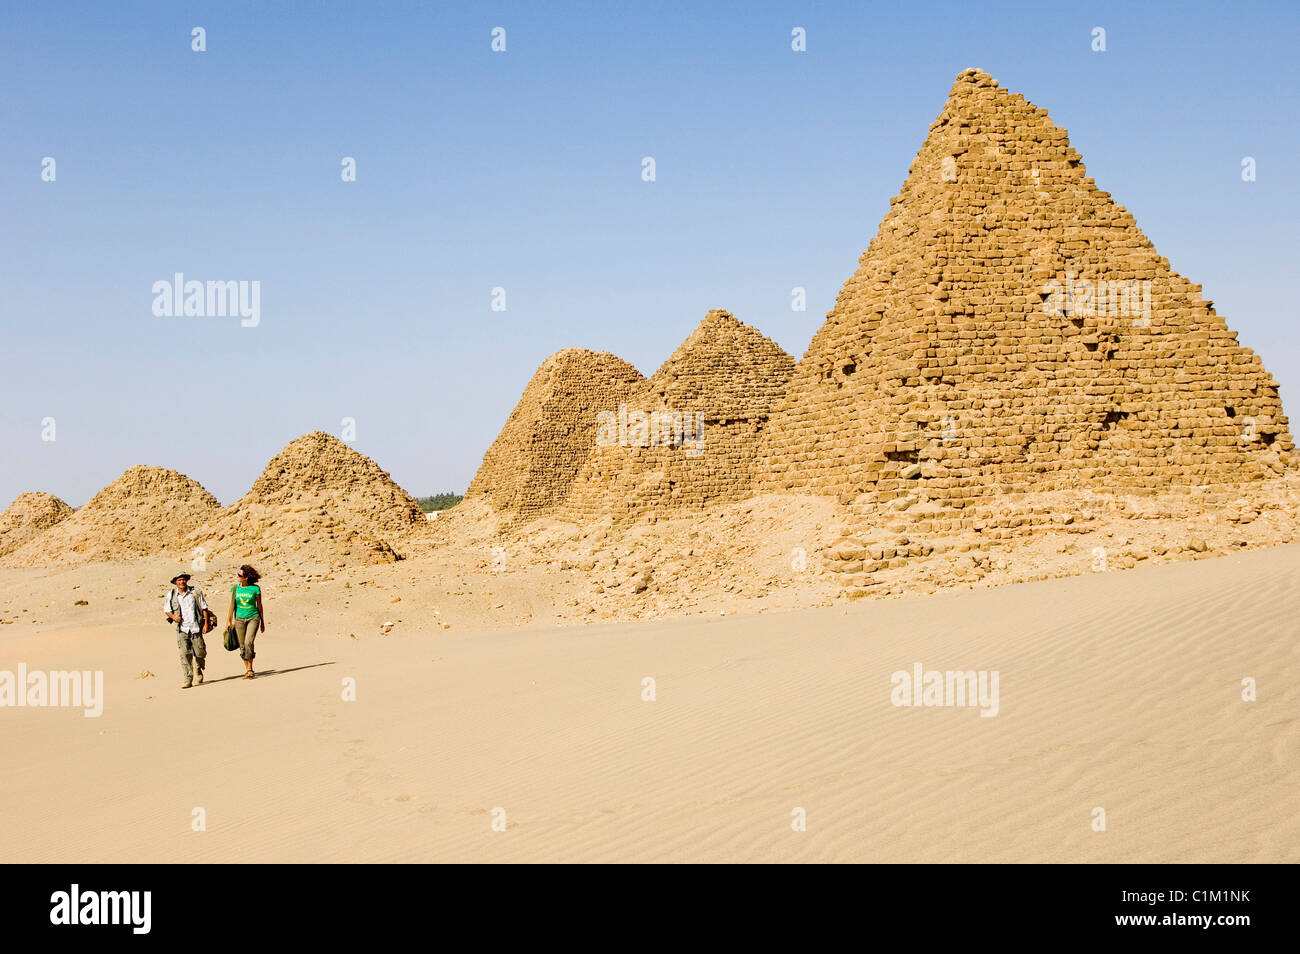 Sudan, Nuri pyramids, Kingdom of Meroe Stock Photo